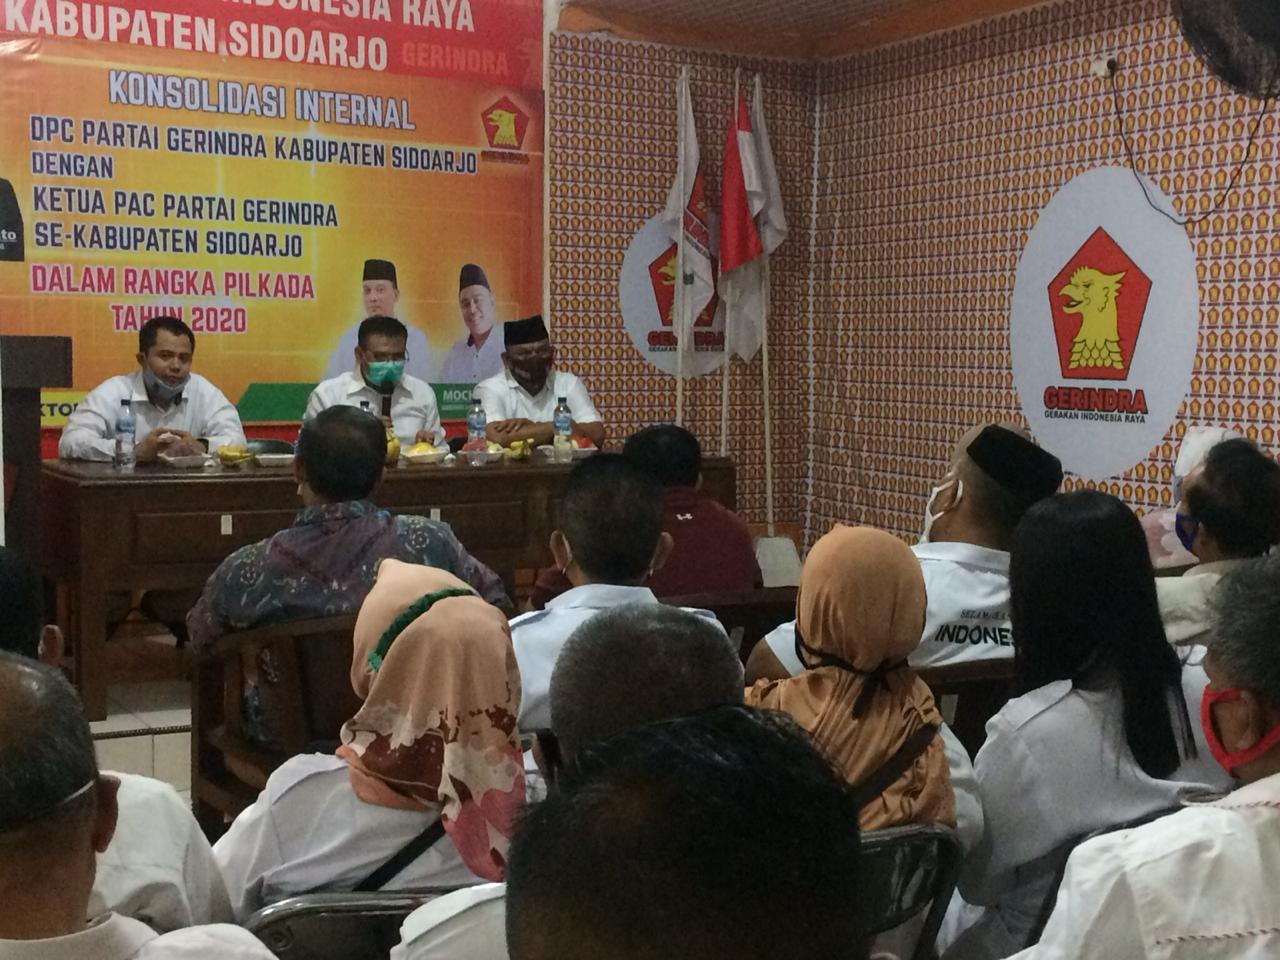  Partai Gerindra Perkuat Saksi TPS Menangkan BHS-Taufiqulbar 